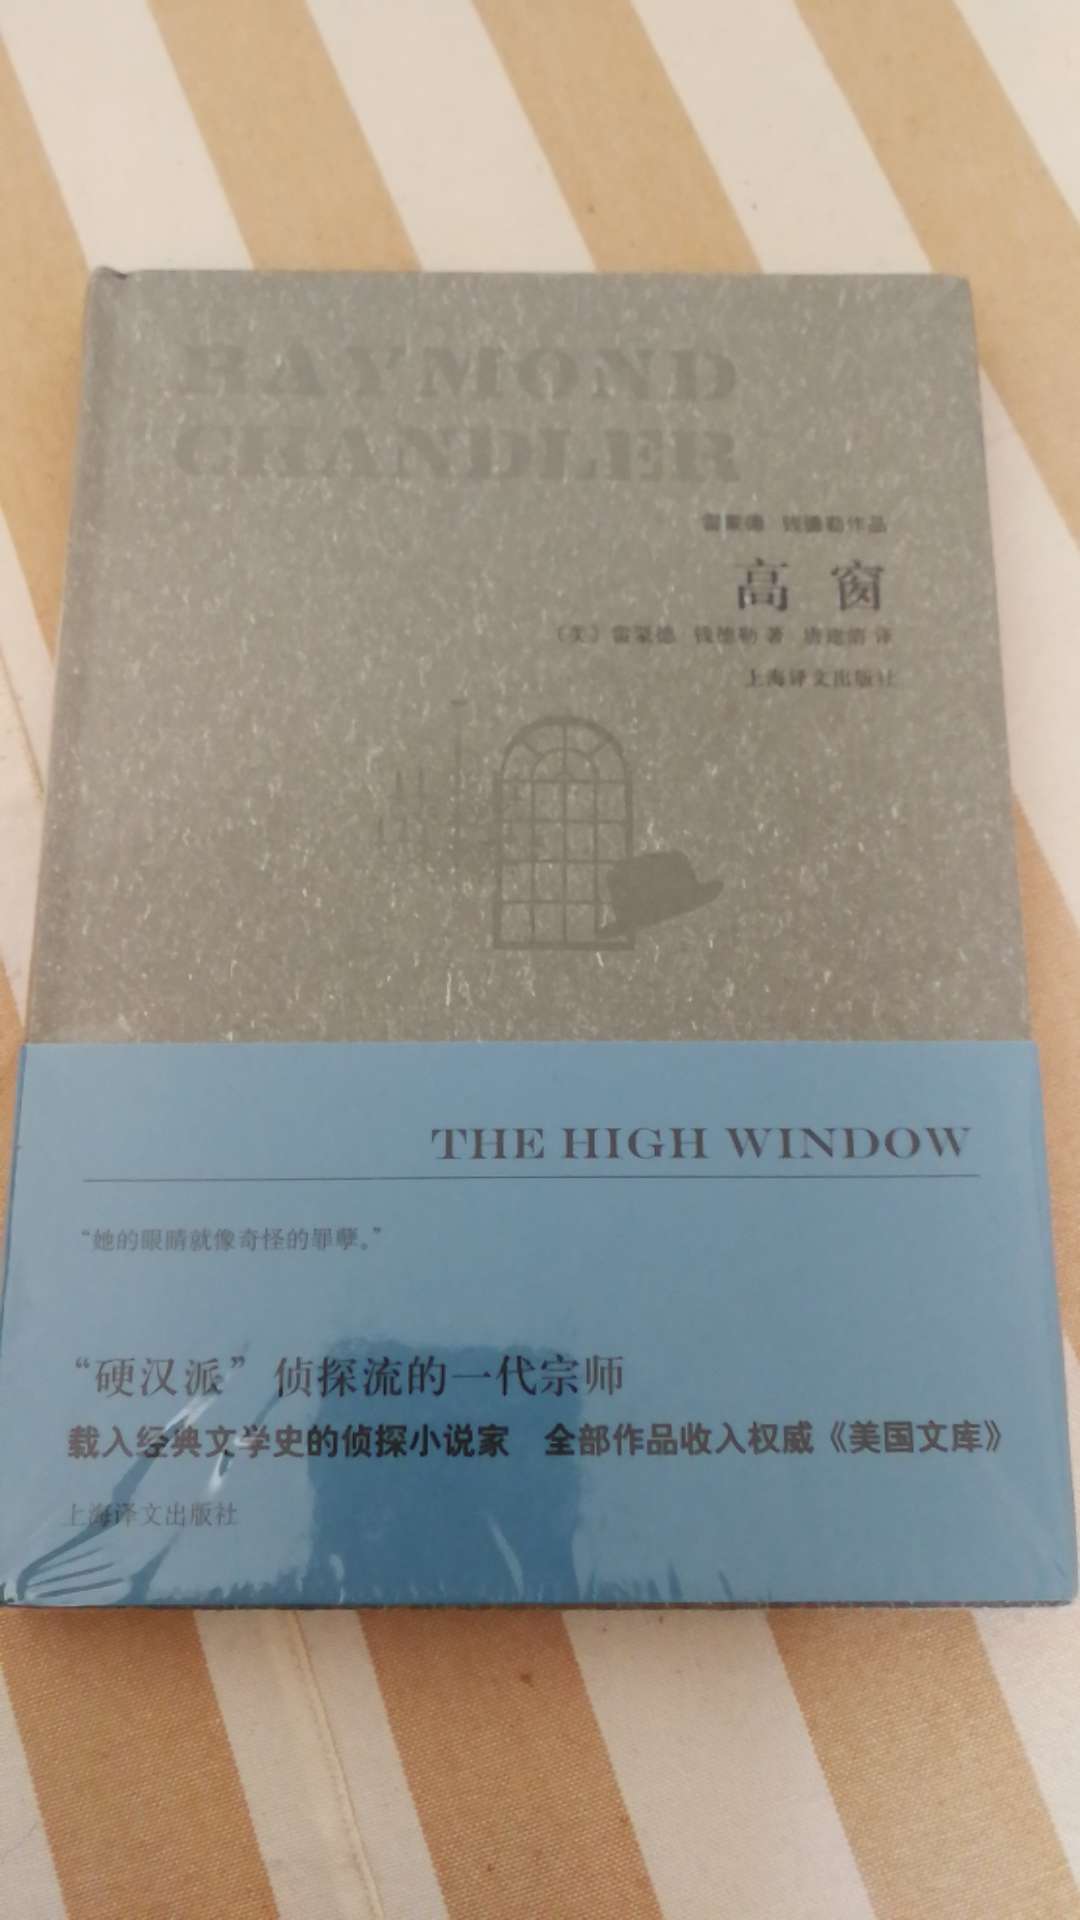 上海译文出版社推出的钱德勒作品集，精装16开，书脊锁线纸质优良，排版印刷得体大方，活动期间价格实惠，送货速度快，满意。